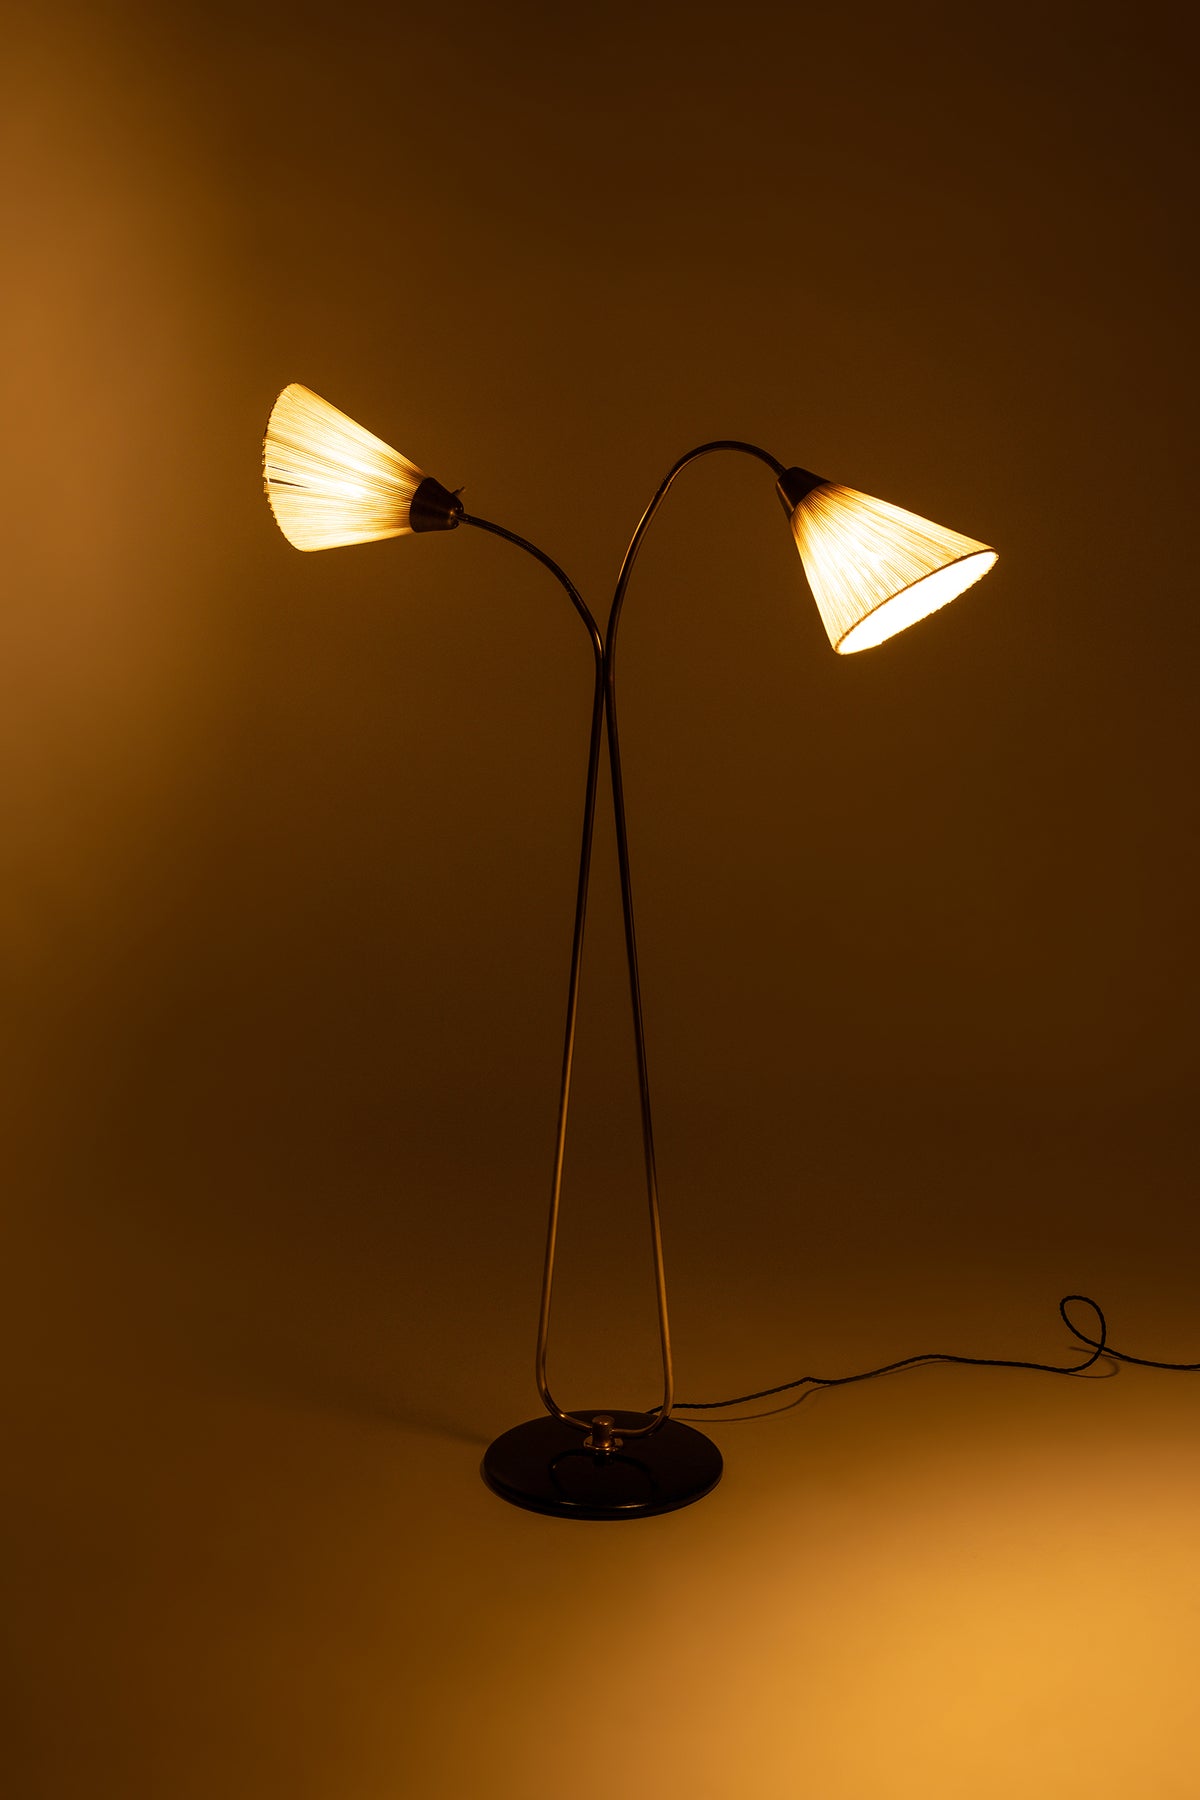 Bergbom & Co AB, Floor Lamp, Brass, Sweden, 50s